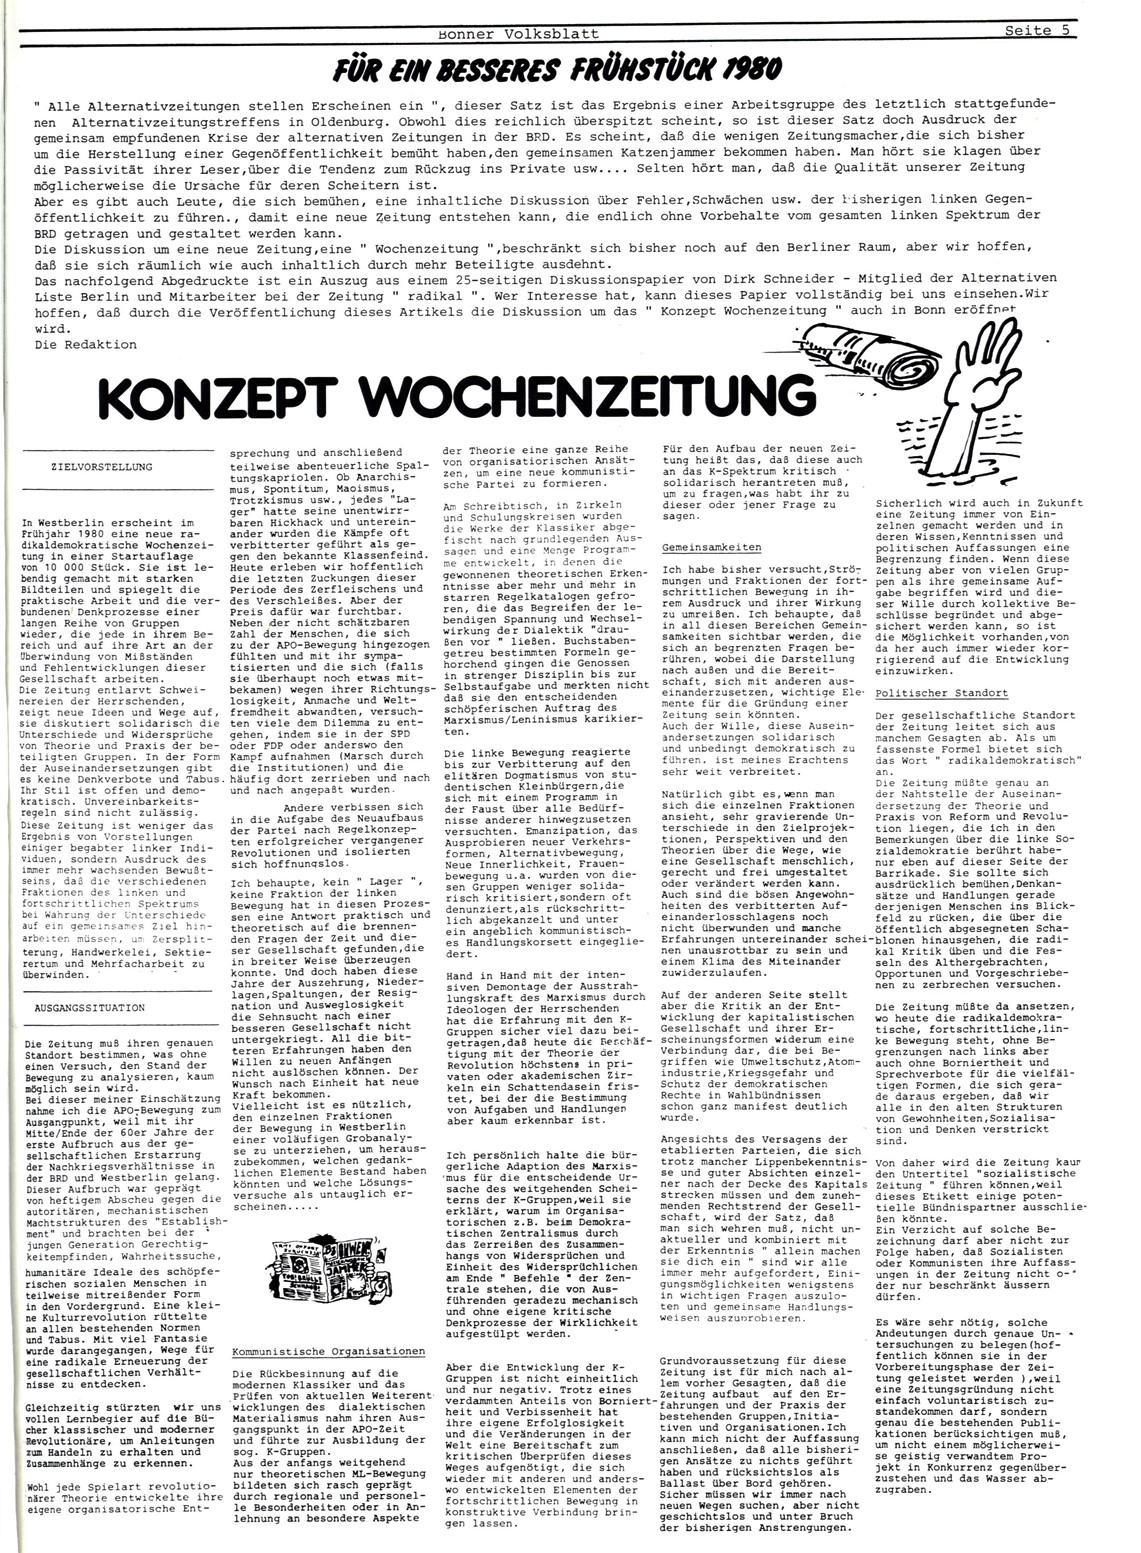 Bonner_Volksblatt_30_19791204_05